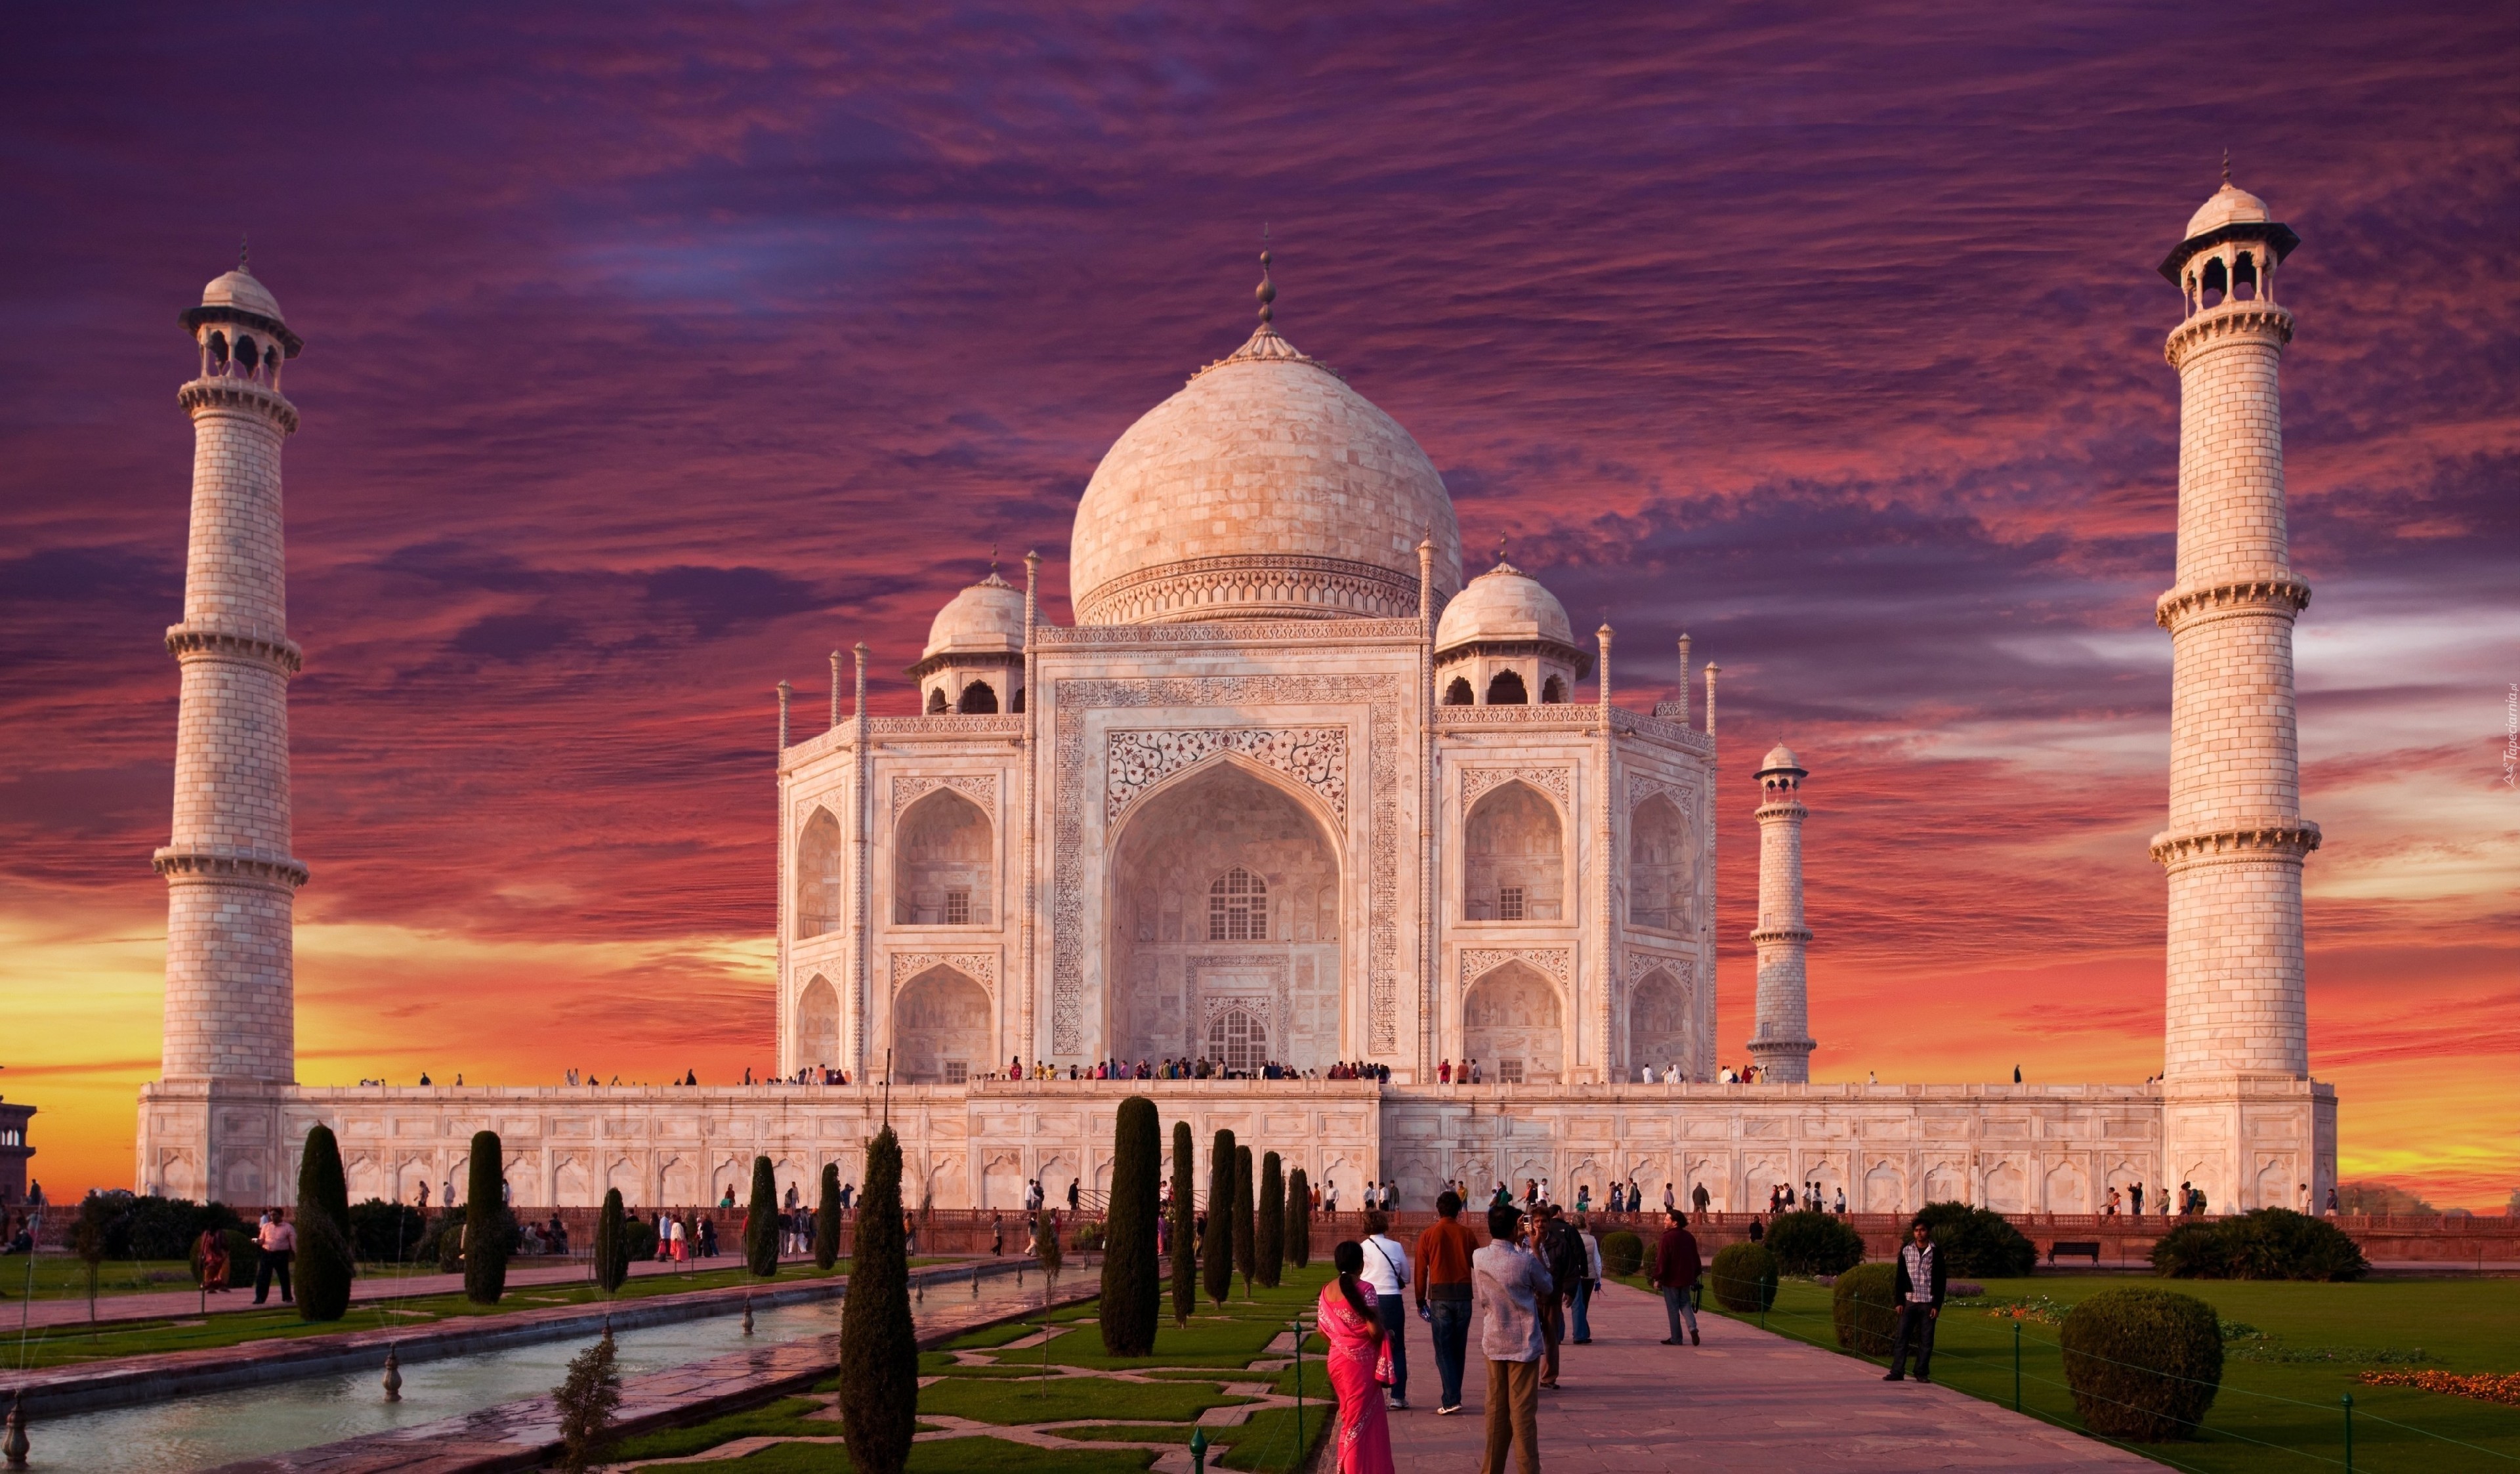 Indie, Pałac, Tadż Mahal, Ludzie, Drzewka Ozdobne